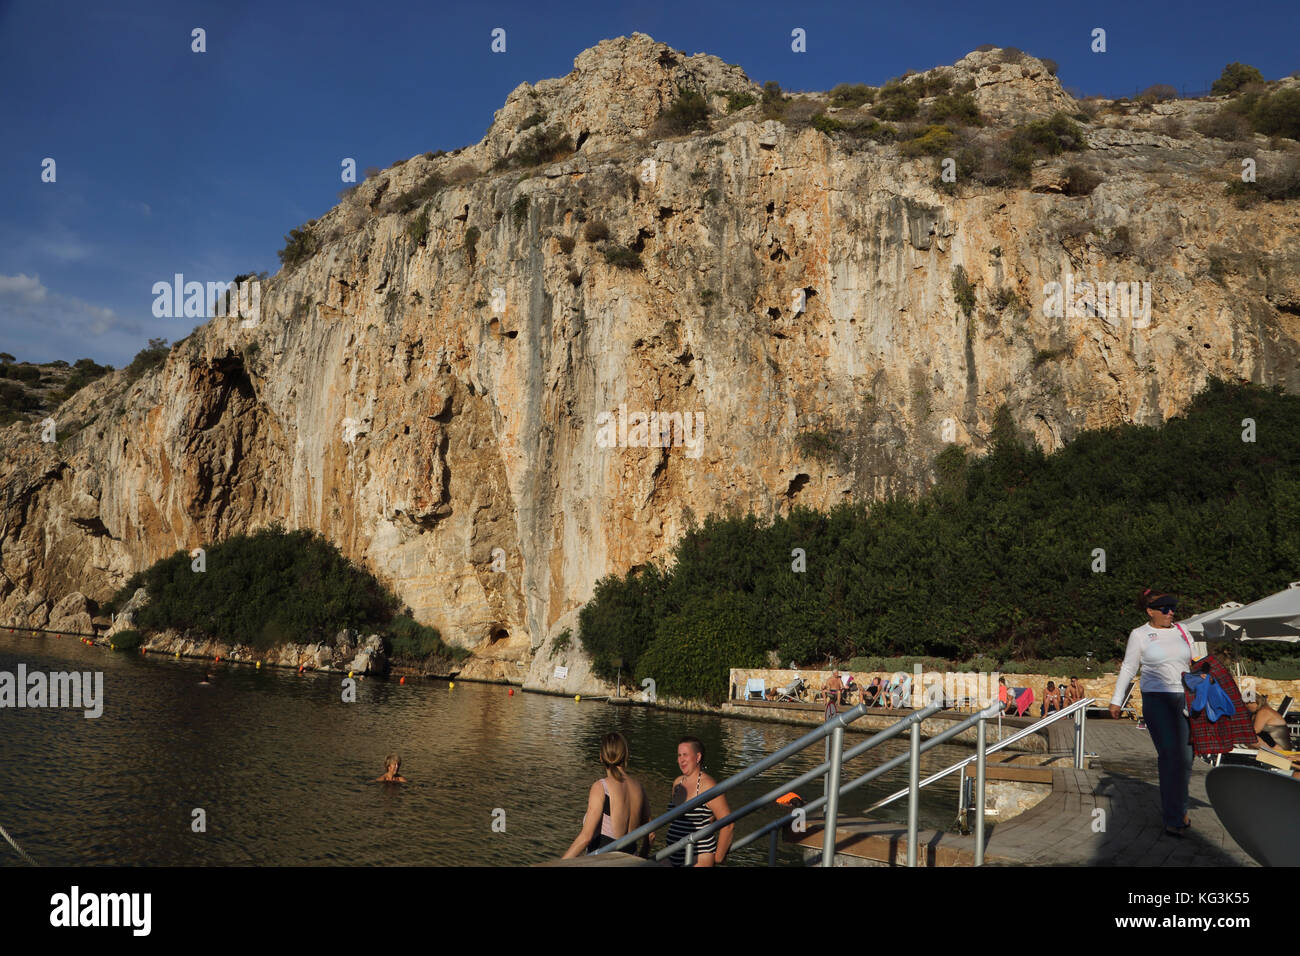 Vouliagmeni Atene Grecia turisti che nuotano nel lago Vouliagmeni una spa naturale - una volta era una caverna ma il tetto della grotta è caduto a causa dell'erosione causata dall'alta temperatura dell'acqua corrente. Foto Stock